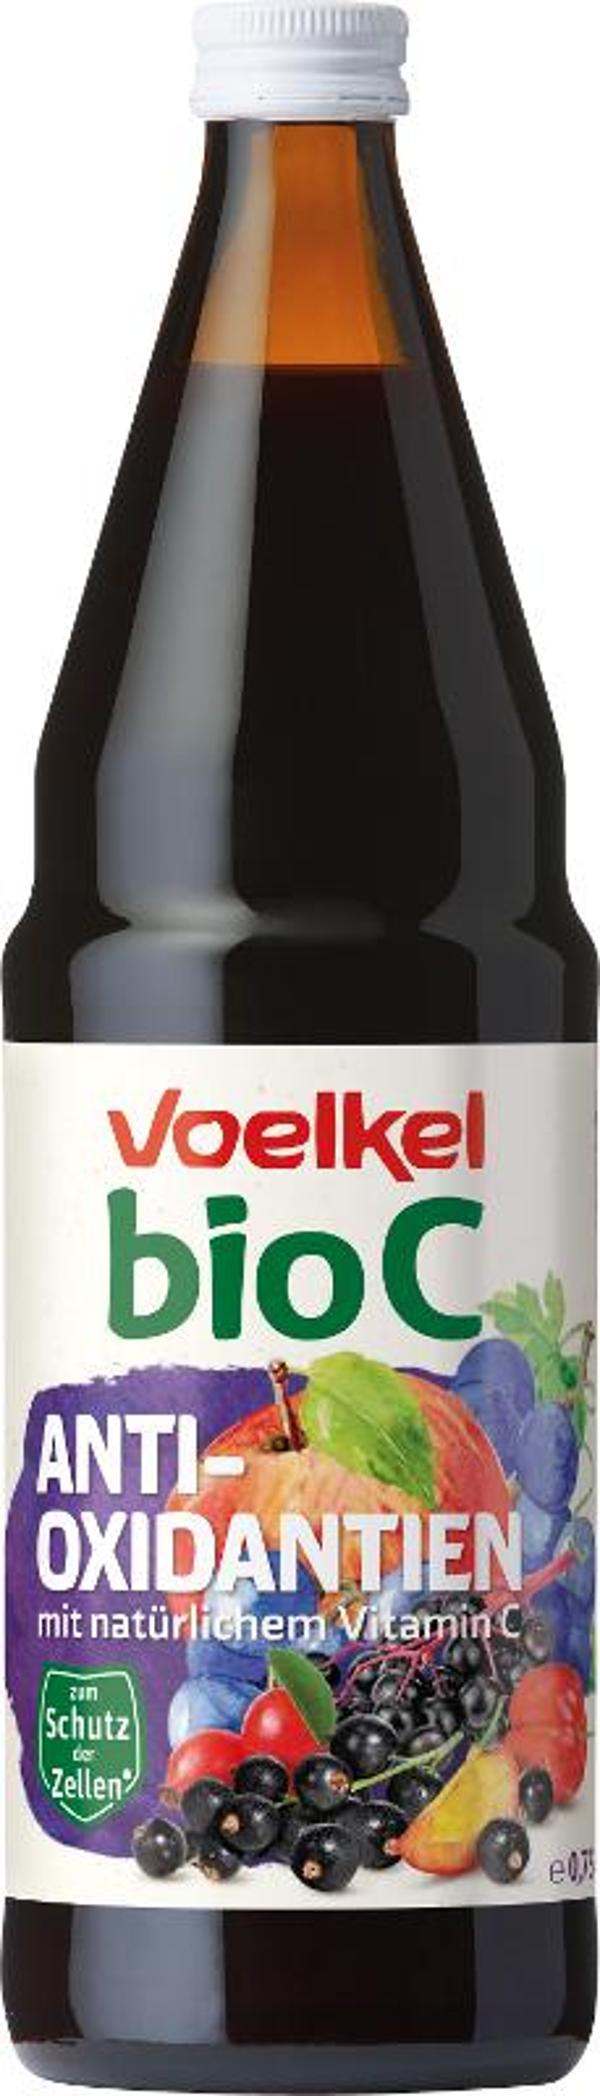 Produktfoto zu VPE bioC Antioxidantien 6x0,75 l Voelkel